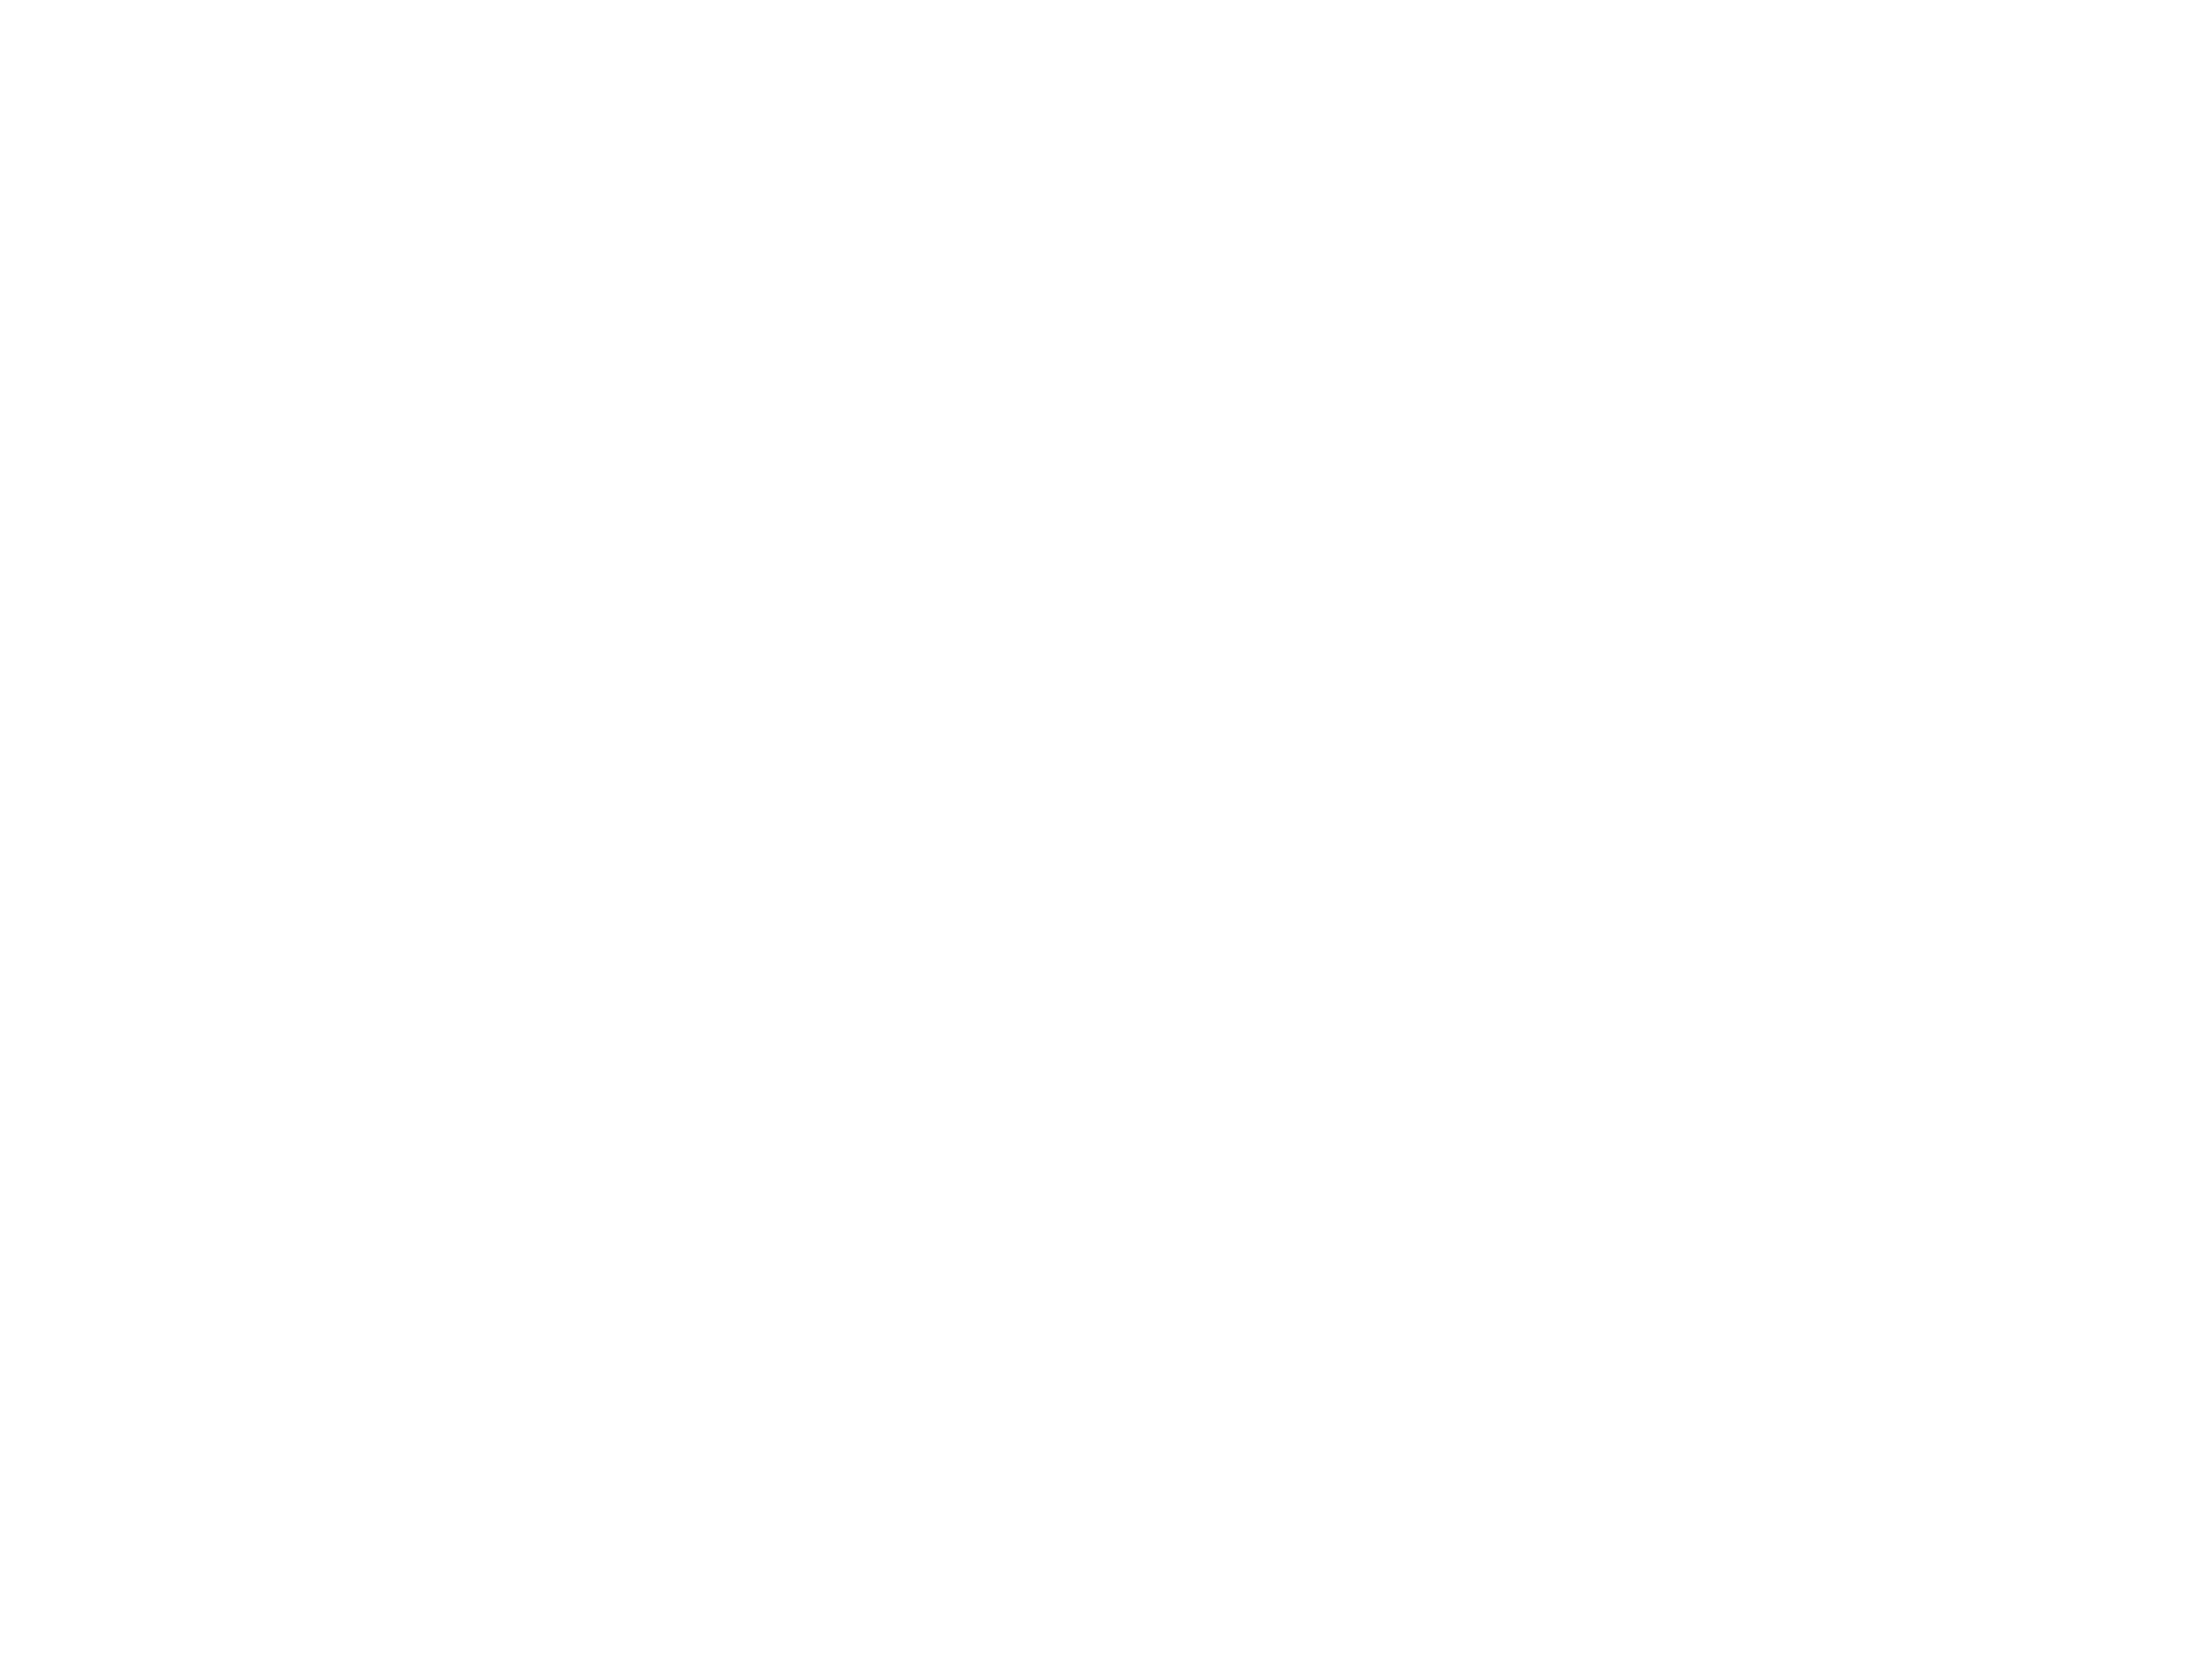 IAEA Logo - Mission and Vision | UCI Nuclear Reactor Facility